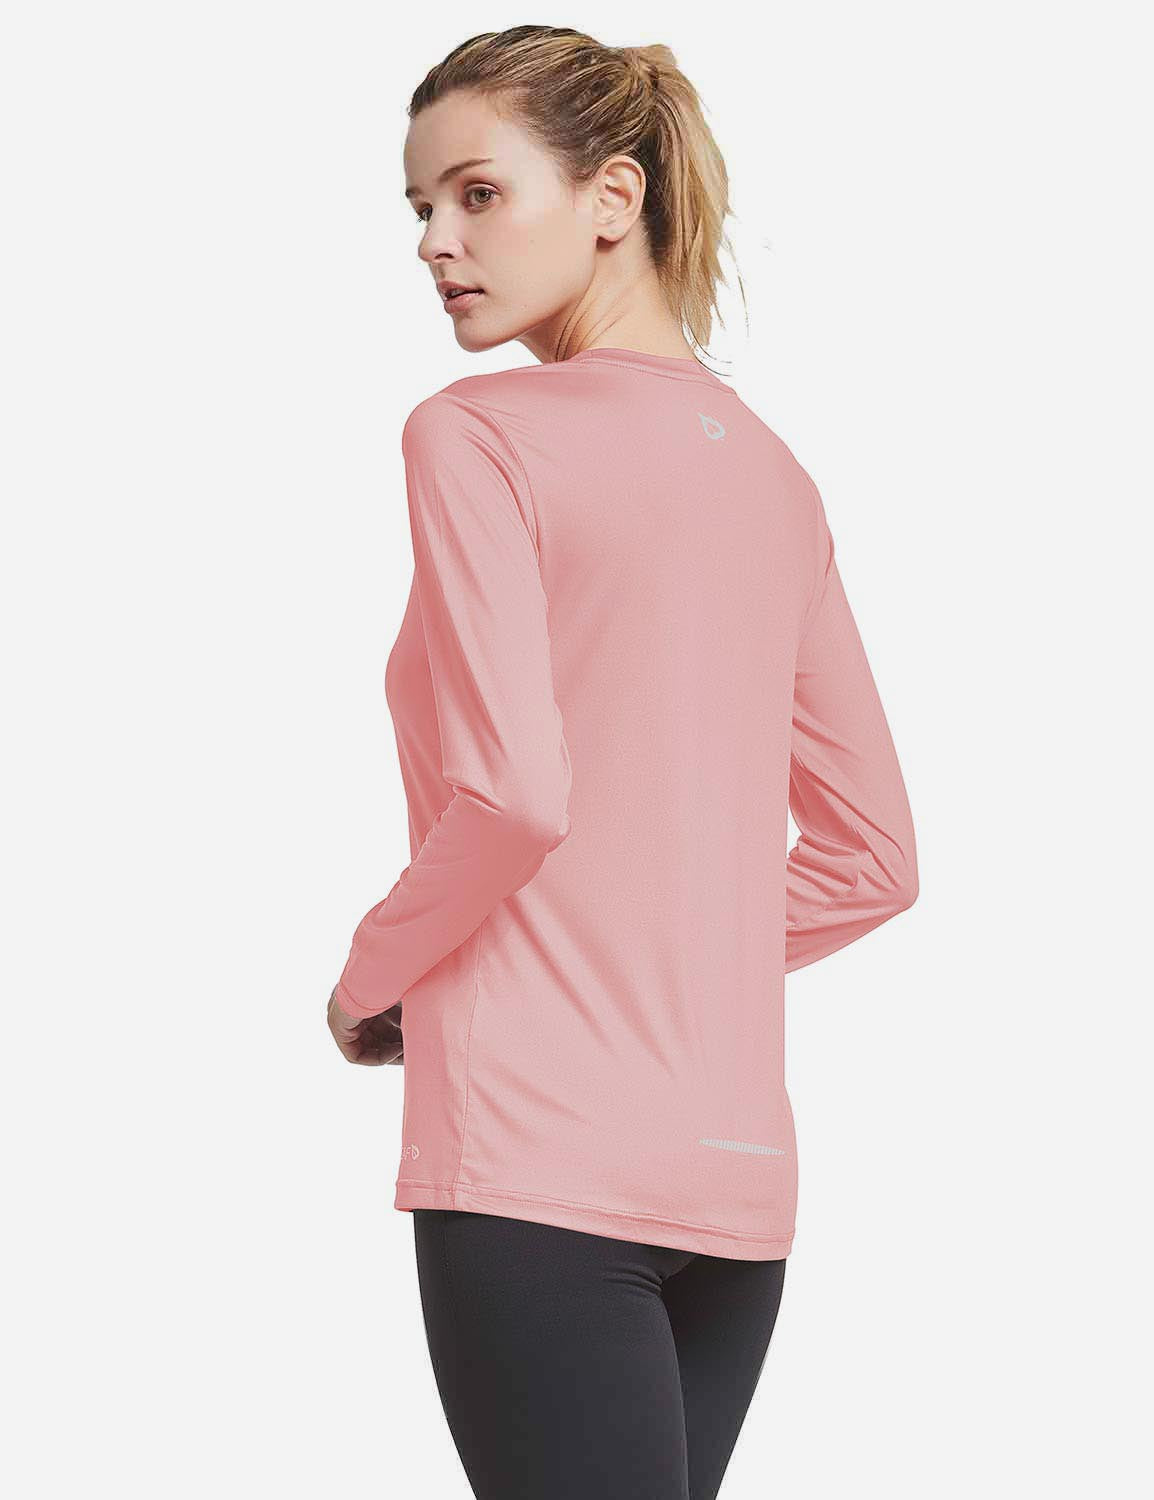 BALEAF Women's Loose Fit Tagless Workout Long Sleeved Shirt abd294 Pink Back